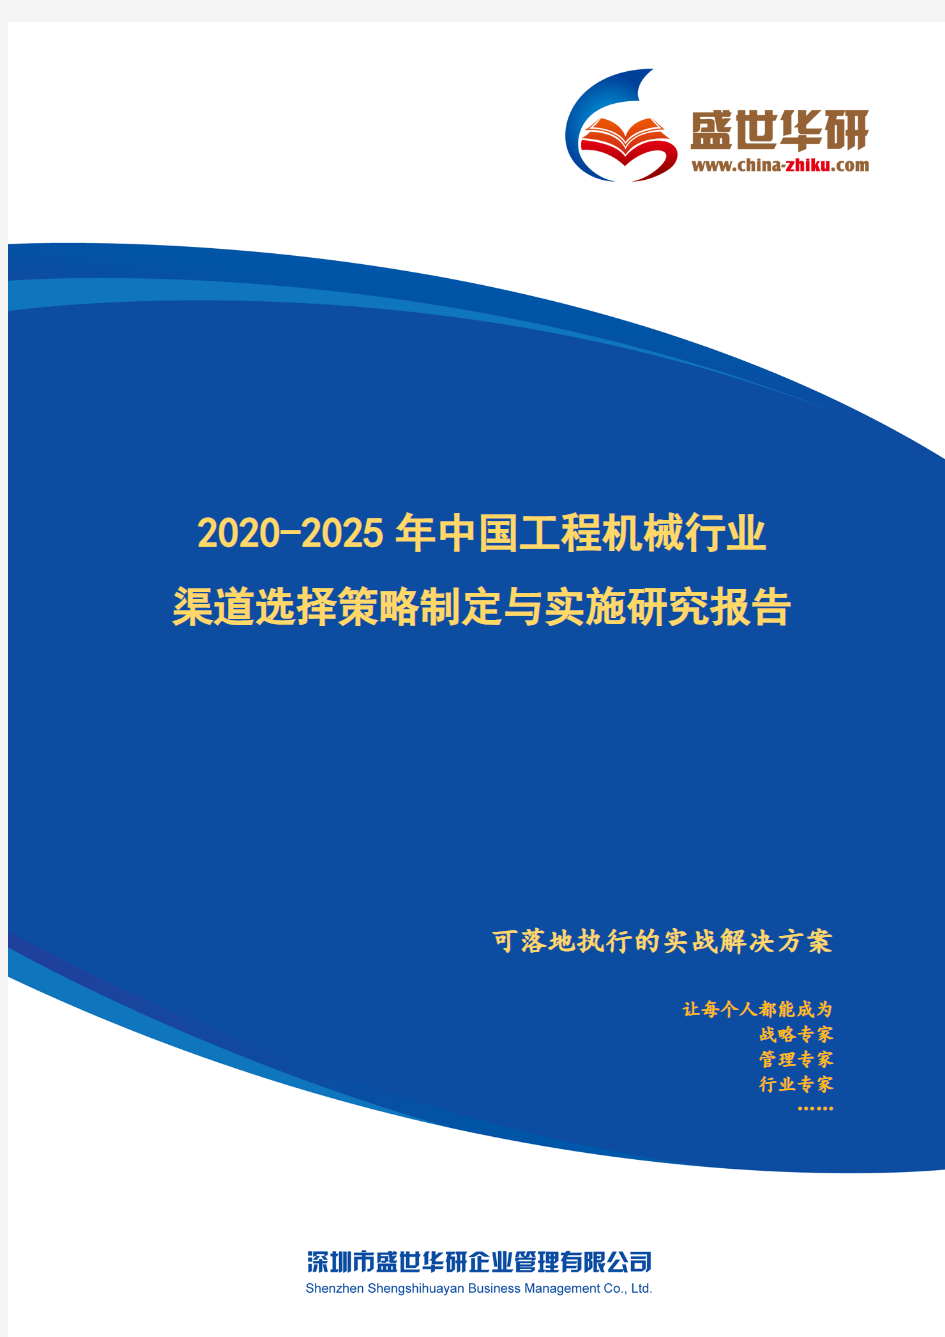 【完整版】2020-2025年中国工程机械行业渠道选择策略制定与实施研究报告